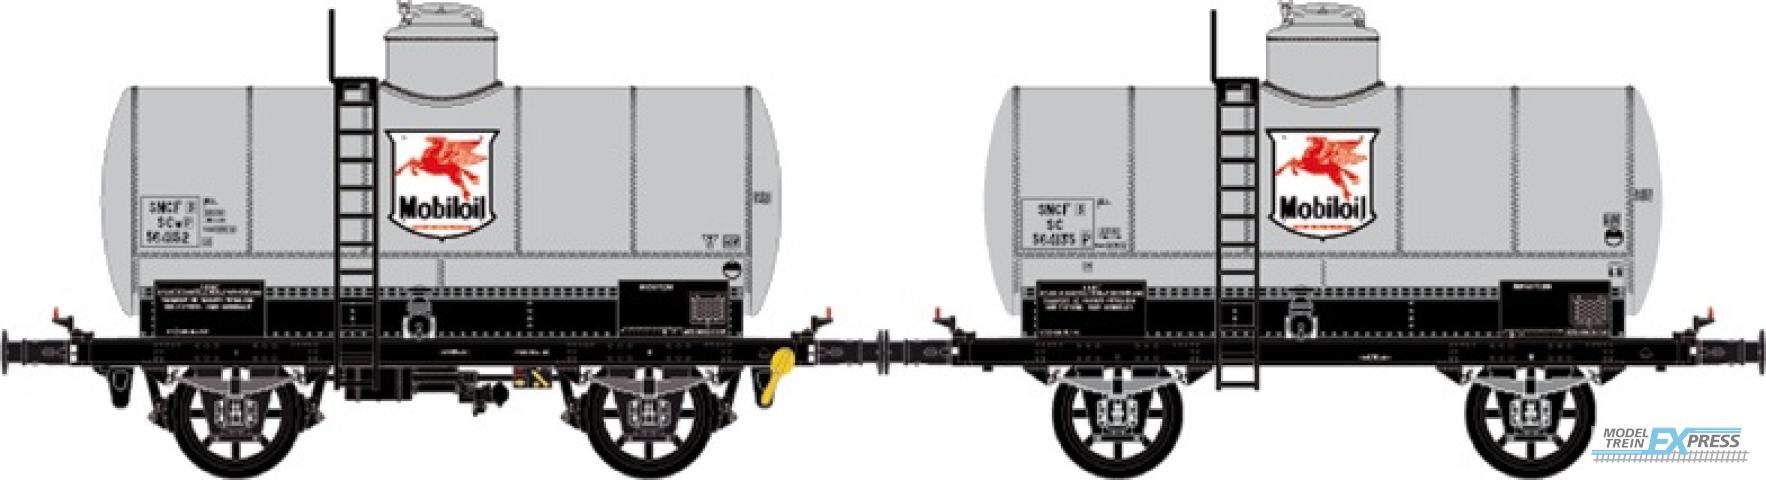 LS Models 30434 Set OCEM, ketelwagen, zonder voetgangersbrug, grijs,  SNCF, Mobiloil  /  Ep. III  /  SNCF  /  HO  /  DC  /  2 P.